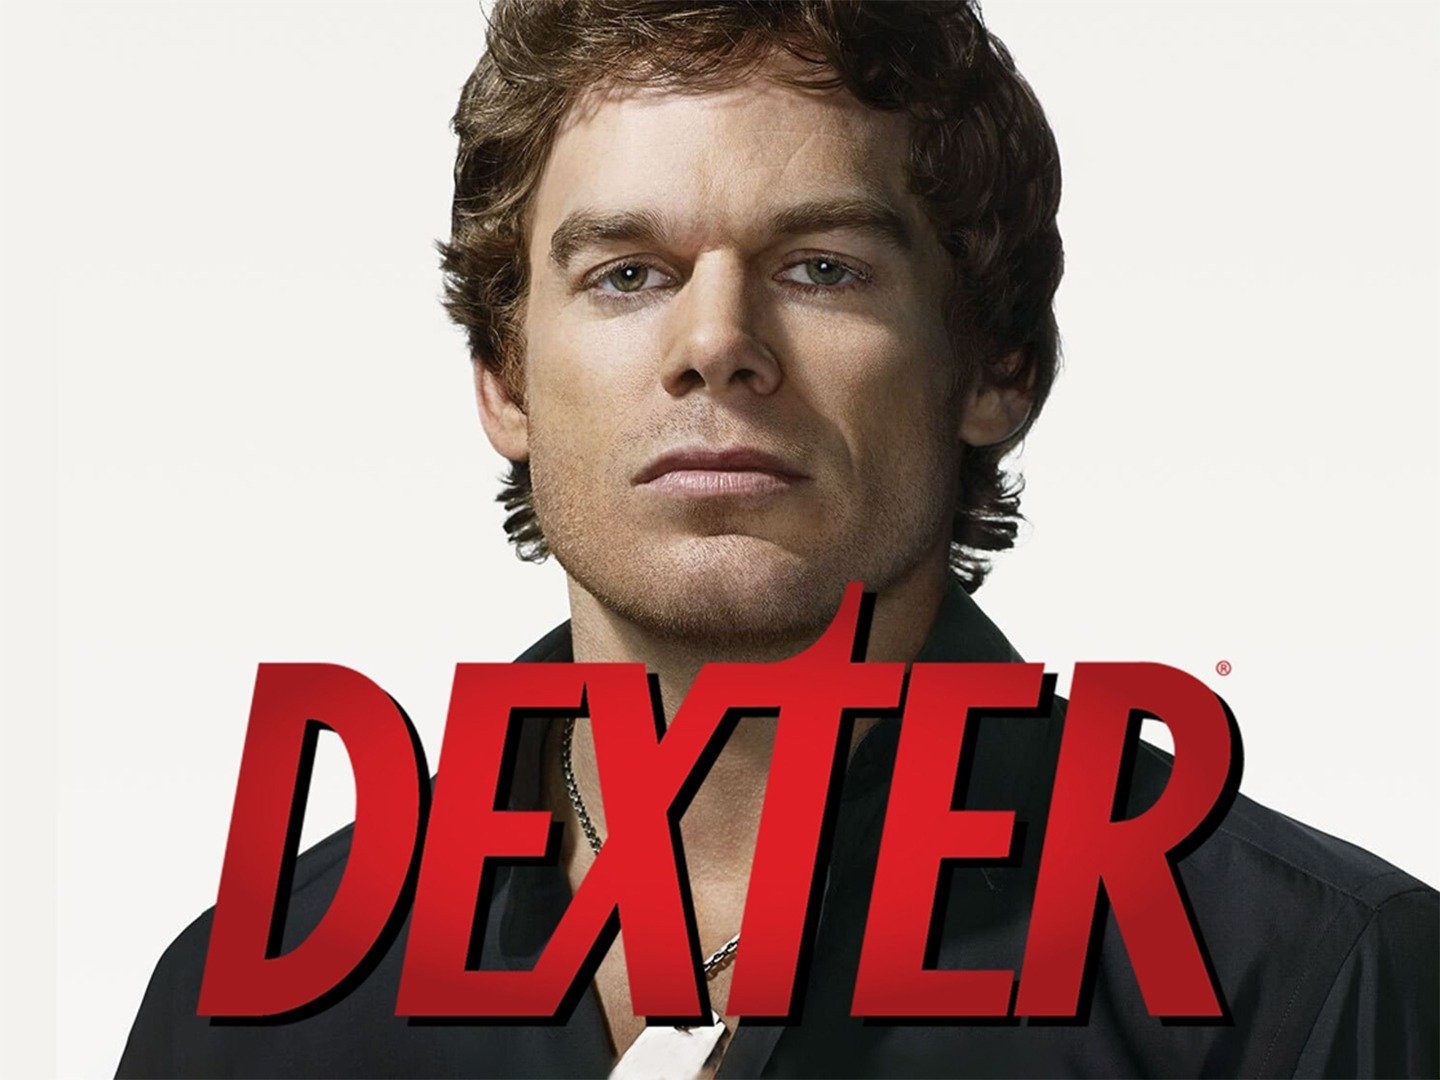 Série de TV Dexter ganha game gratuito no Facebook